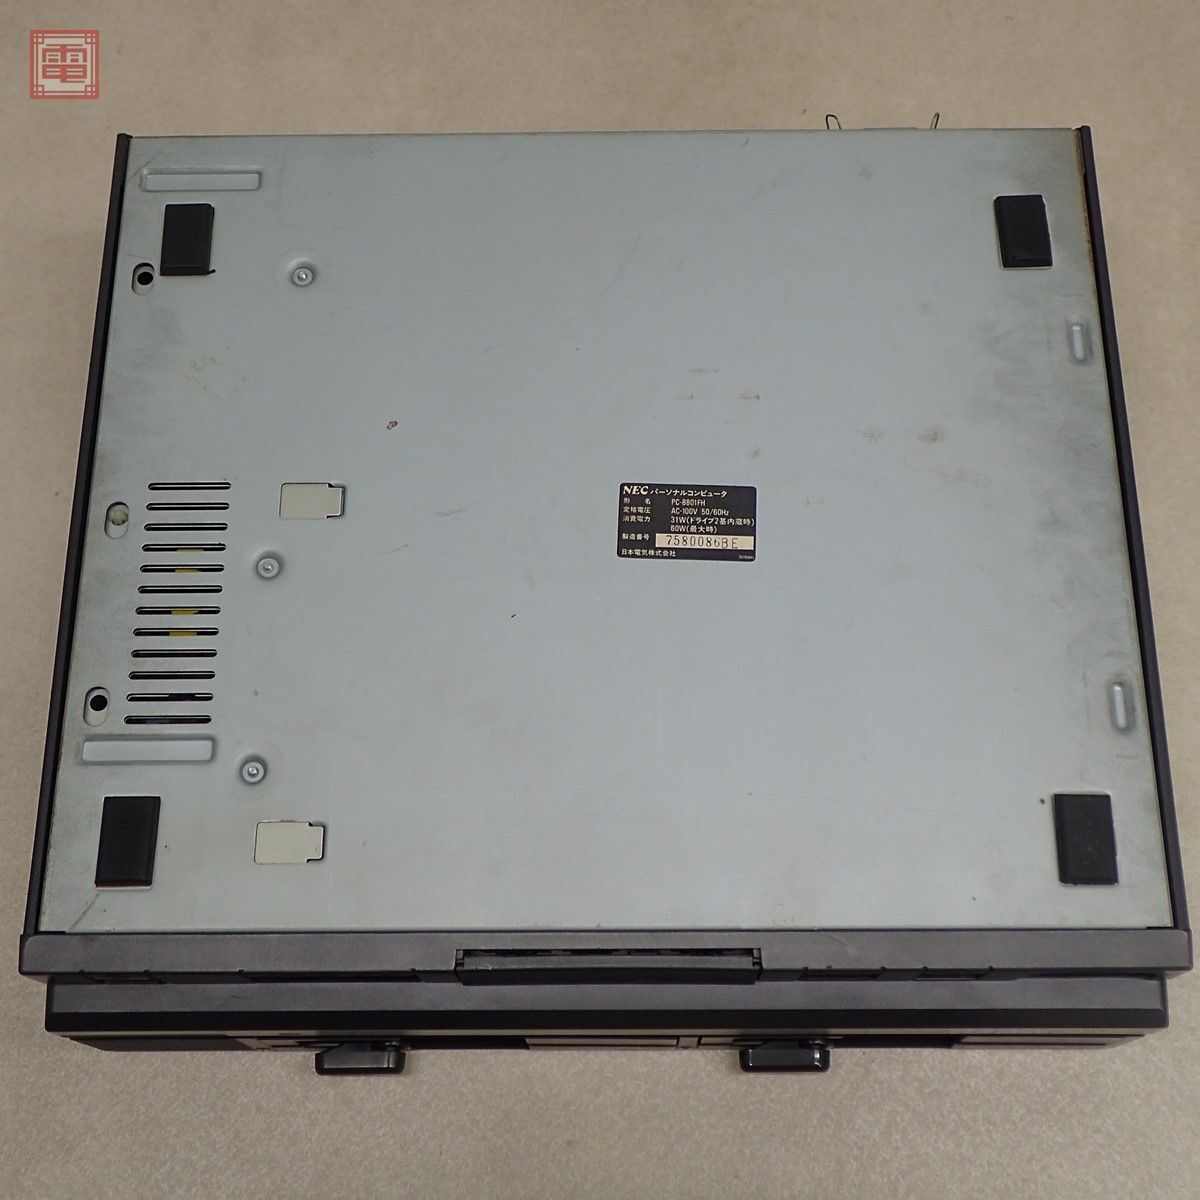 1 иен ~ капитальный ремонт settled NEC PC-8801FH корпус черный модель Япония электрический руководство пользователя *FD* в подарок soft [ доверие длина. .... способ . запись ] есть [40